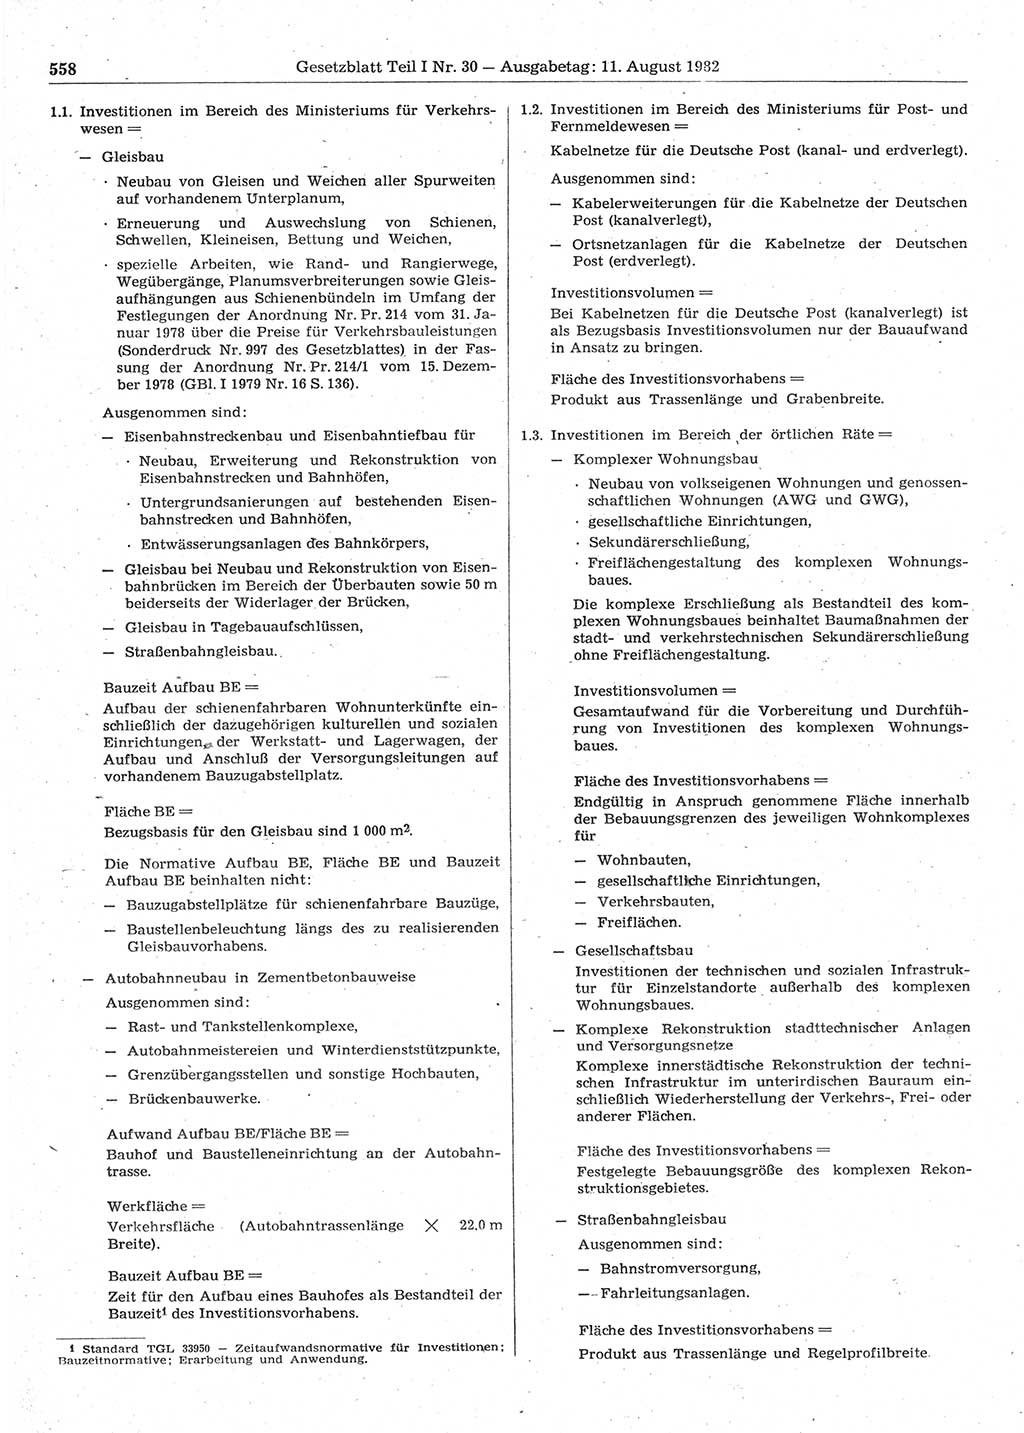 Gesetzblatt (GBl.) der Deutschen Demokratischen Republik (DDR) Teil Ⅰ 1982, Seite 558 (GBl. DDR Ⅰ 1982, S. 558)